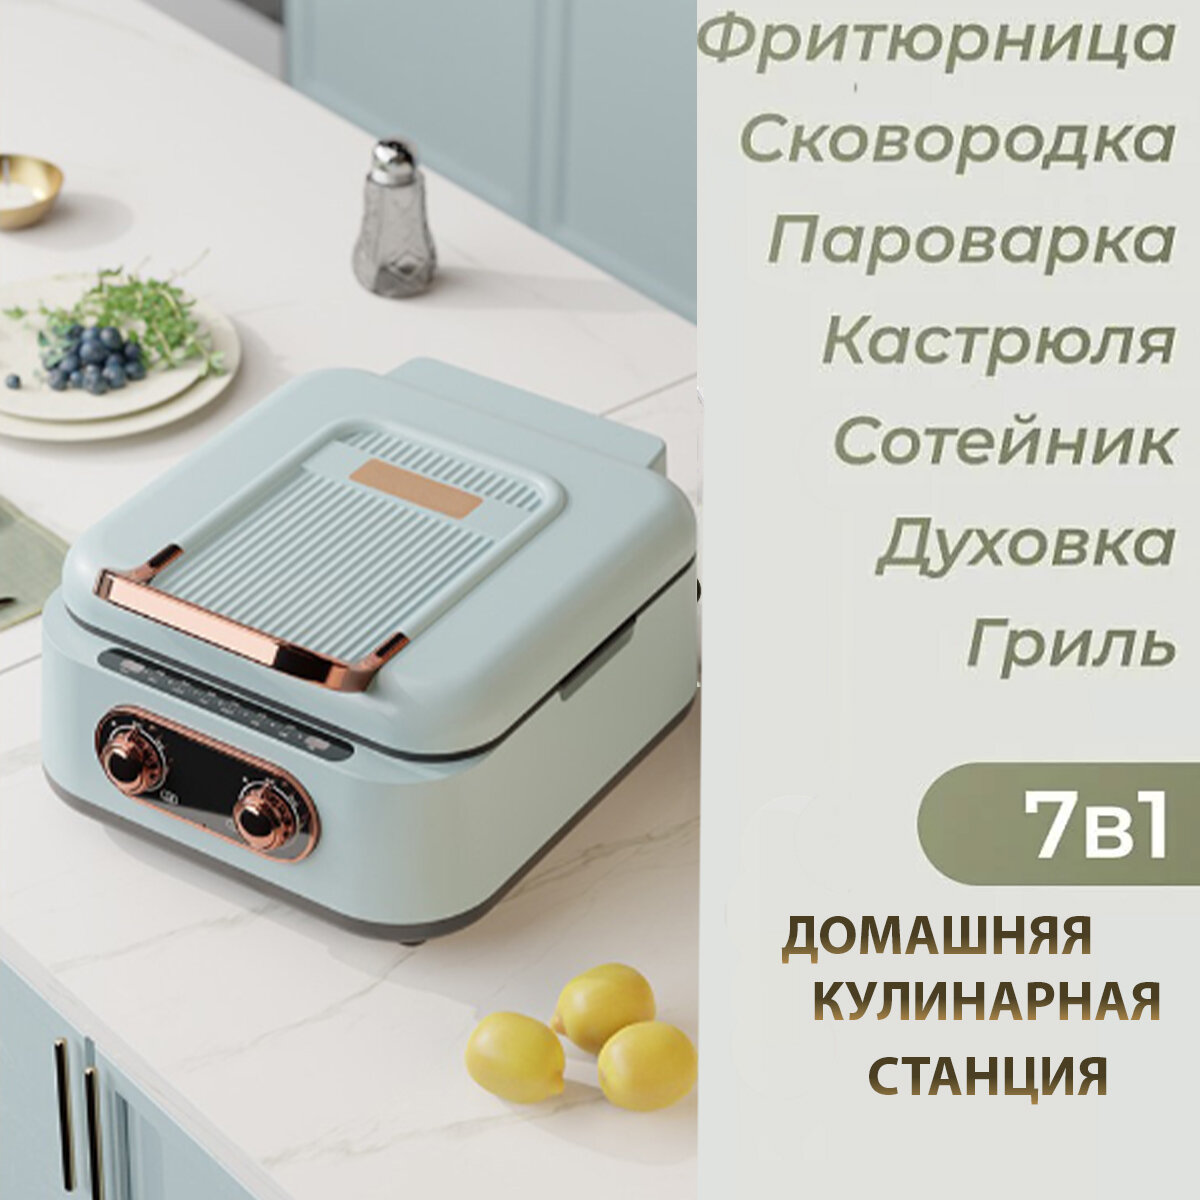 Домашняя кулинарная станция 7 в 1 Электрическая блинная сковорода с двухсторонним нагревом